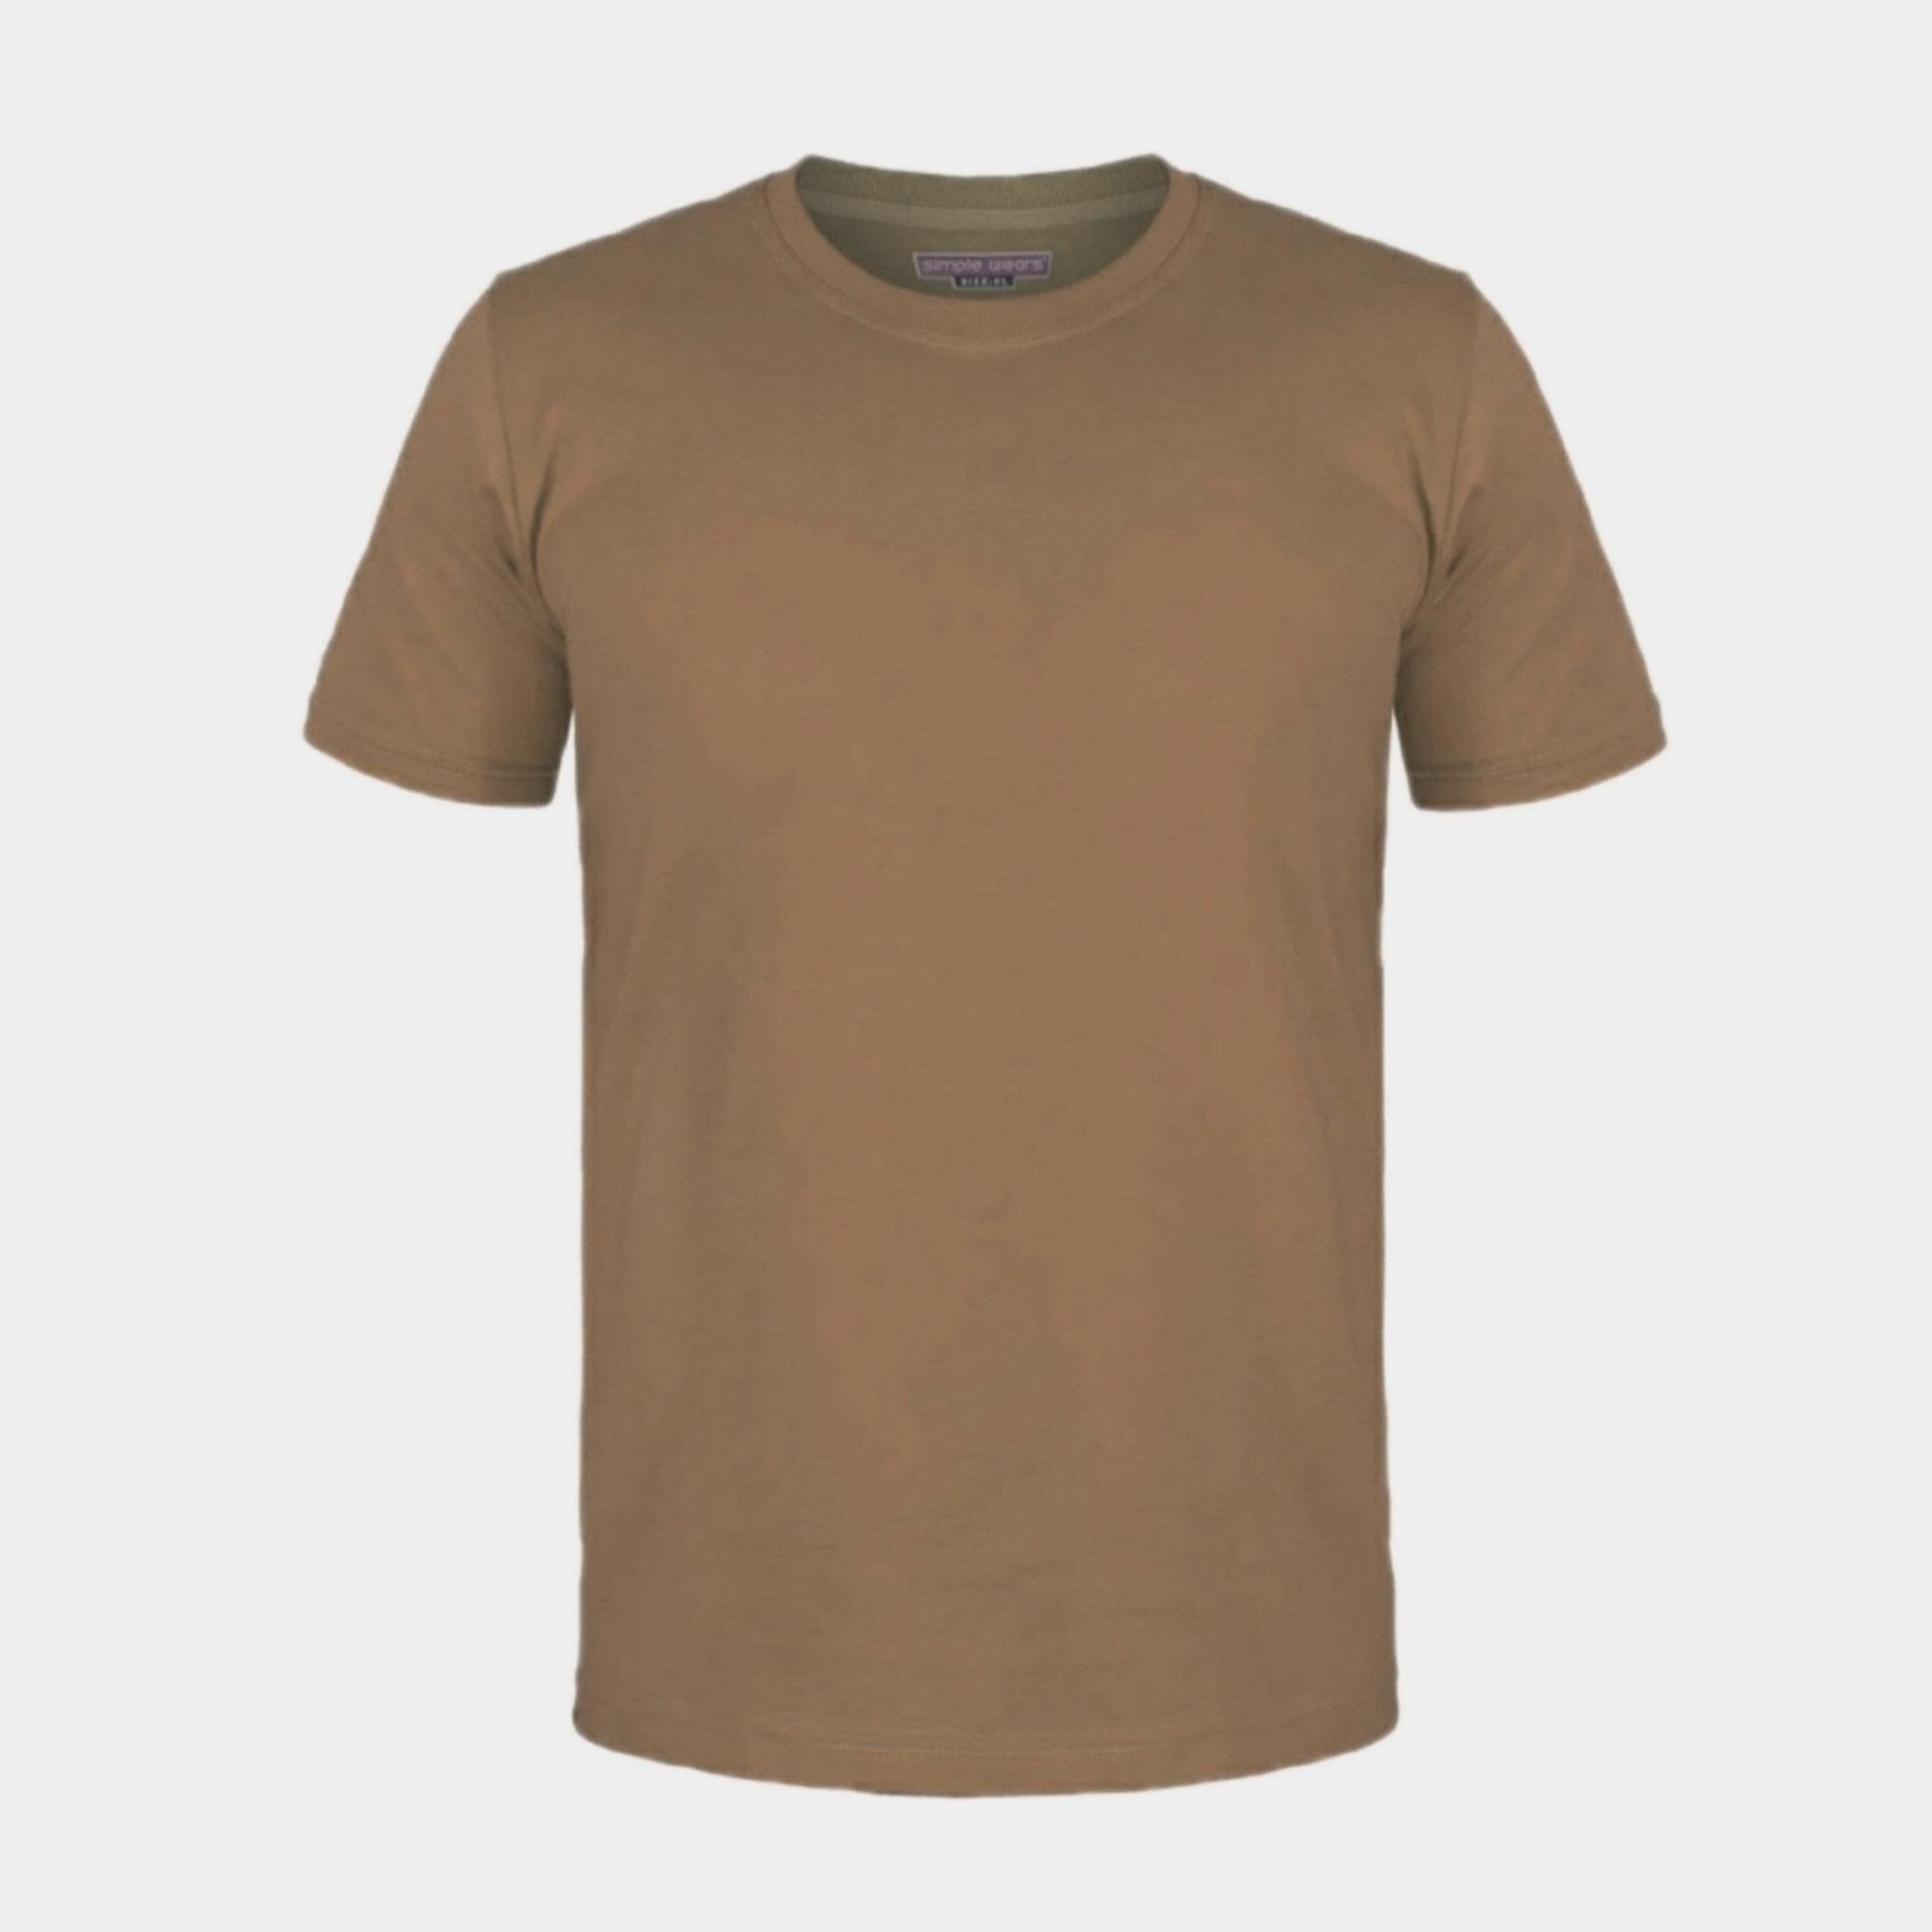 تی شرت آستین کوتاه زنانه مدل ساده کد U76 رنگ قهوه ای